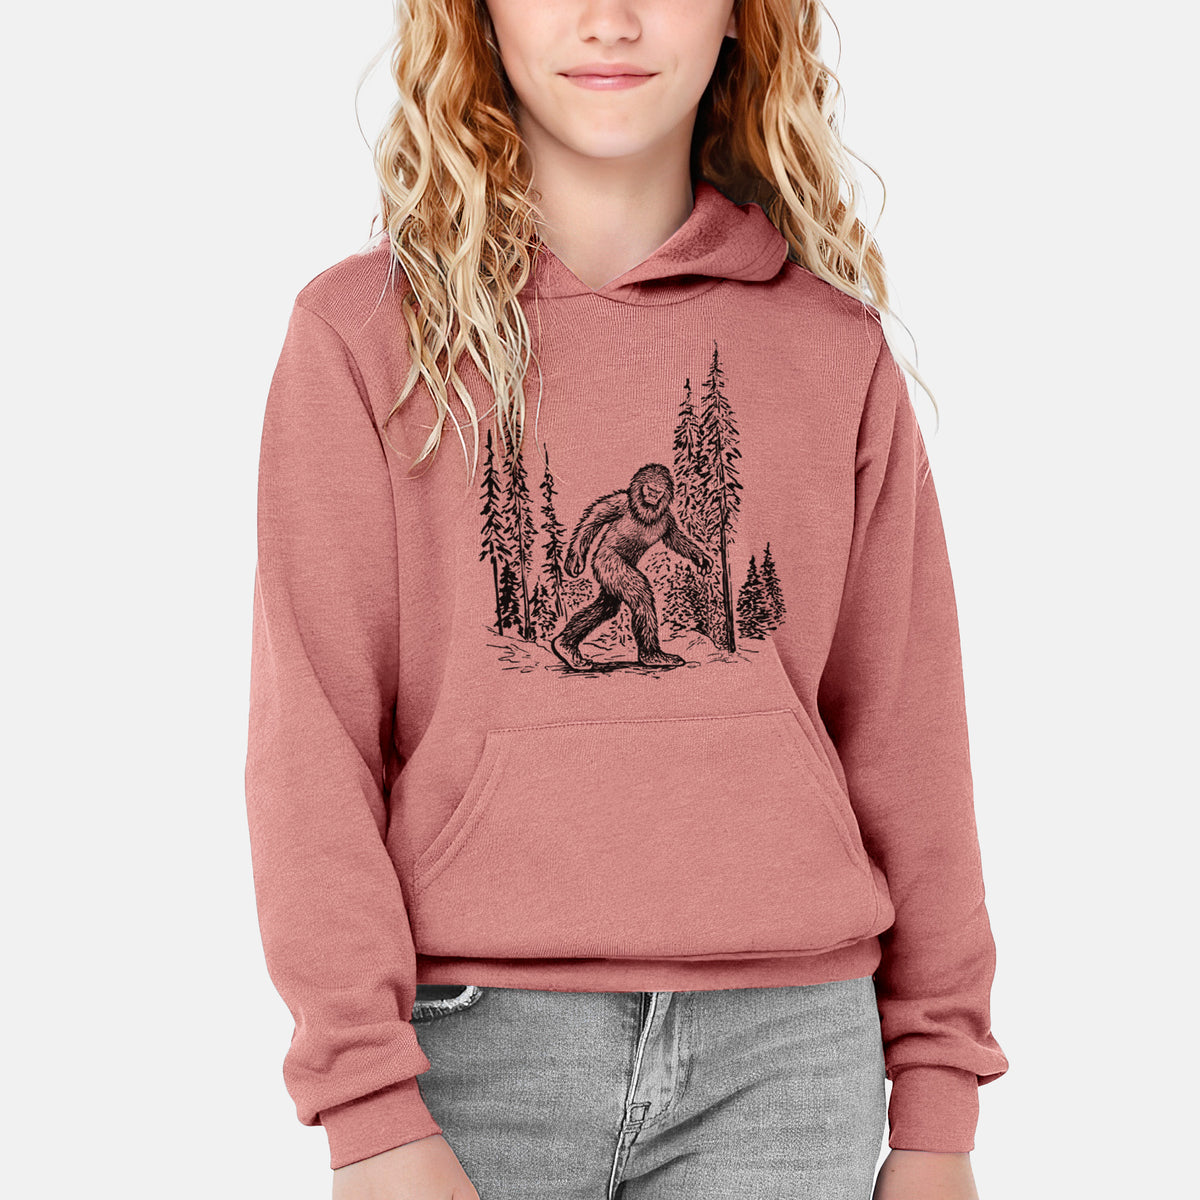 Bigfoot in the Woods - Youth Hoodie Sweatshirt